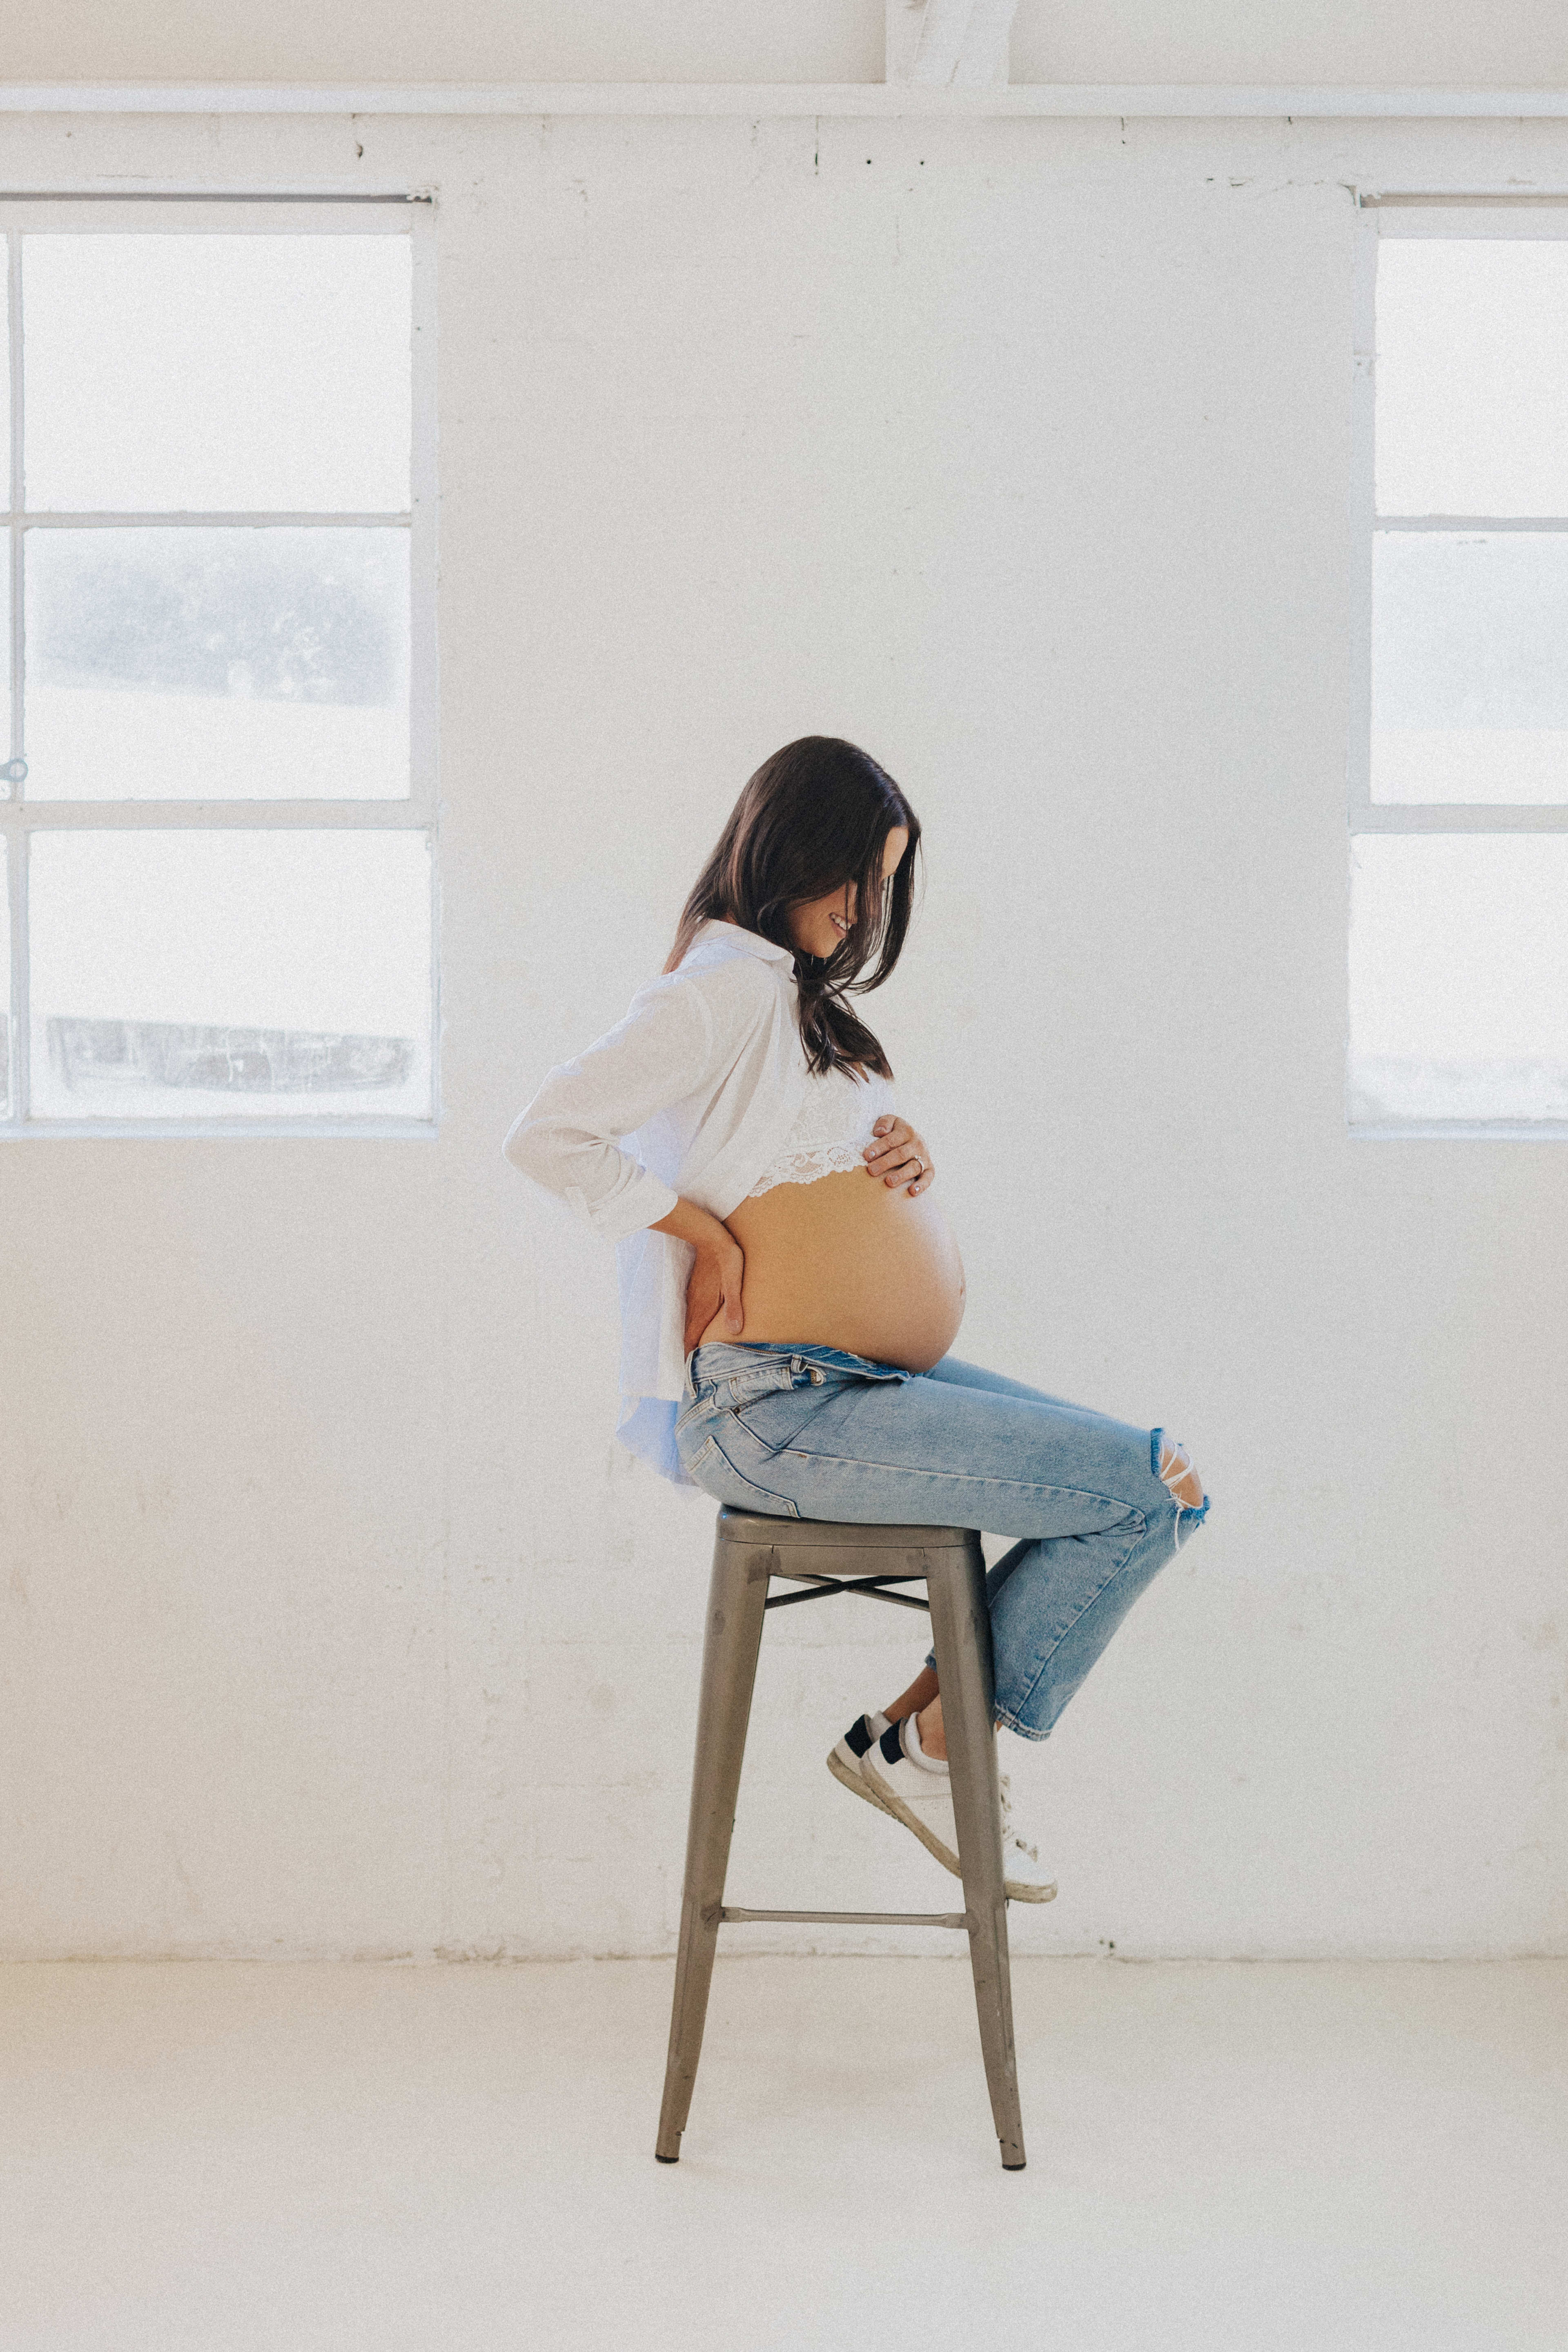 Un shooting photo d'une femme enceinte sur un tabouret blanc dans un décor minimaliste.